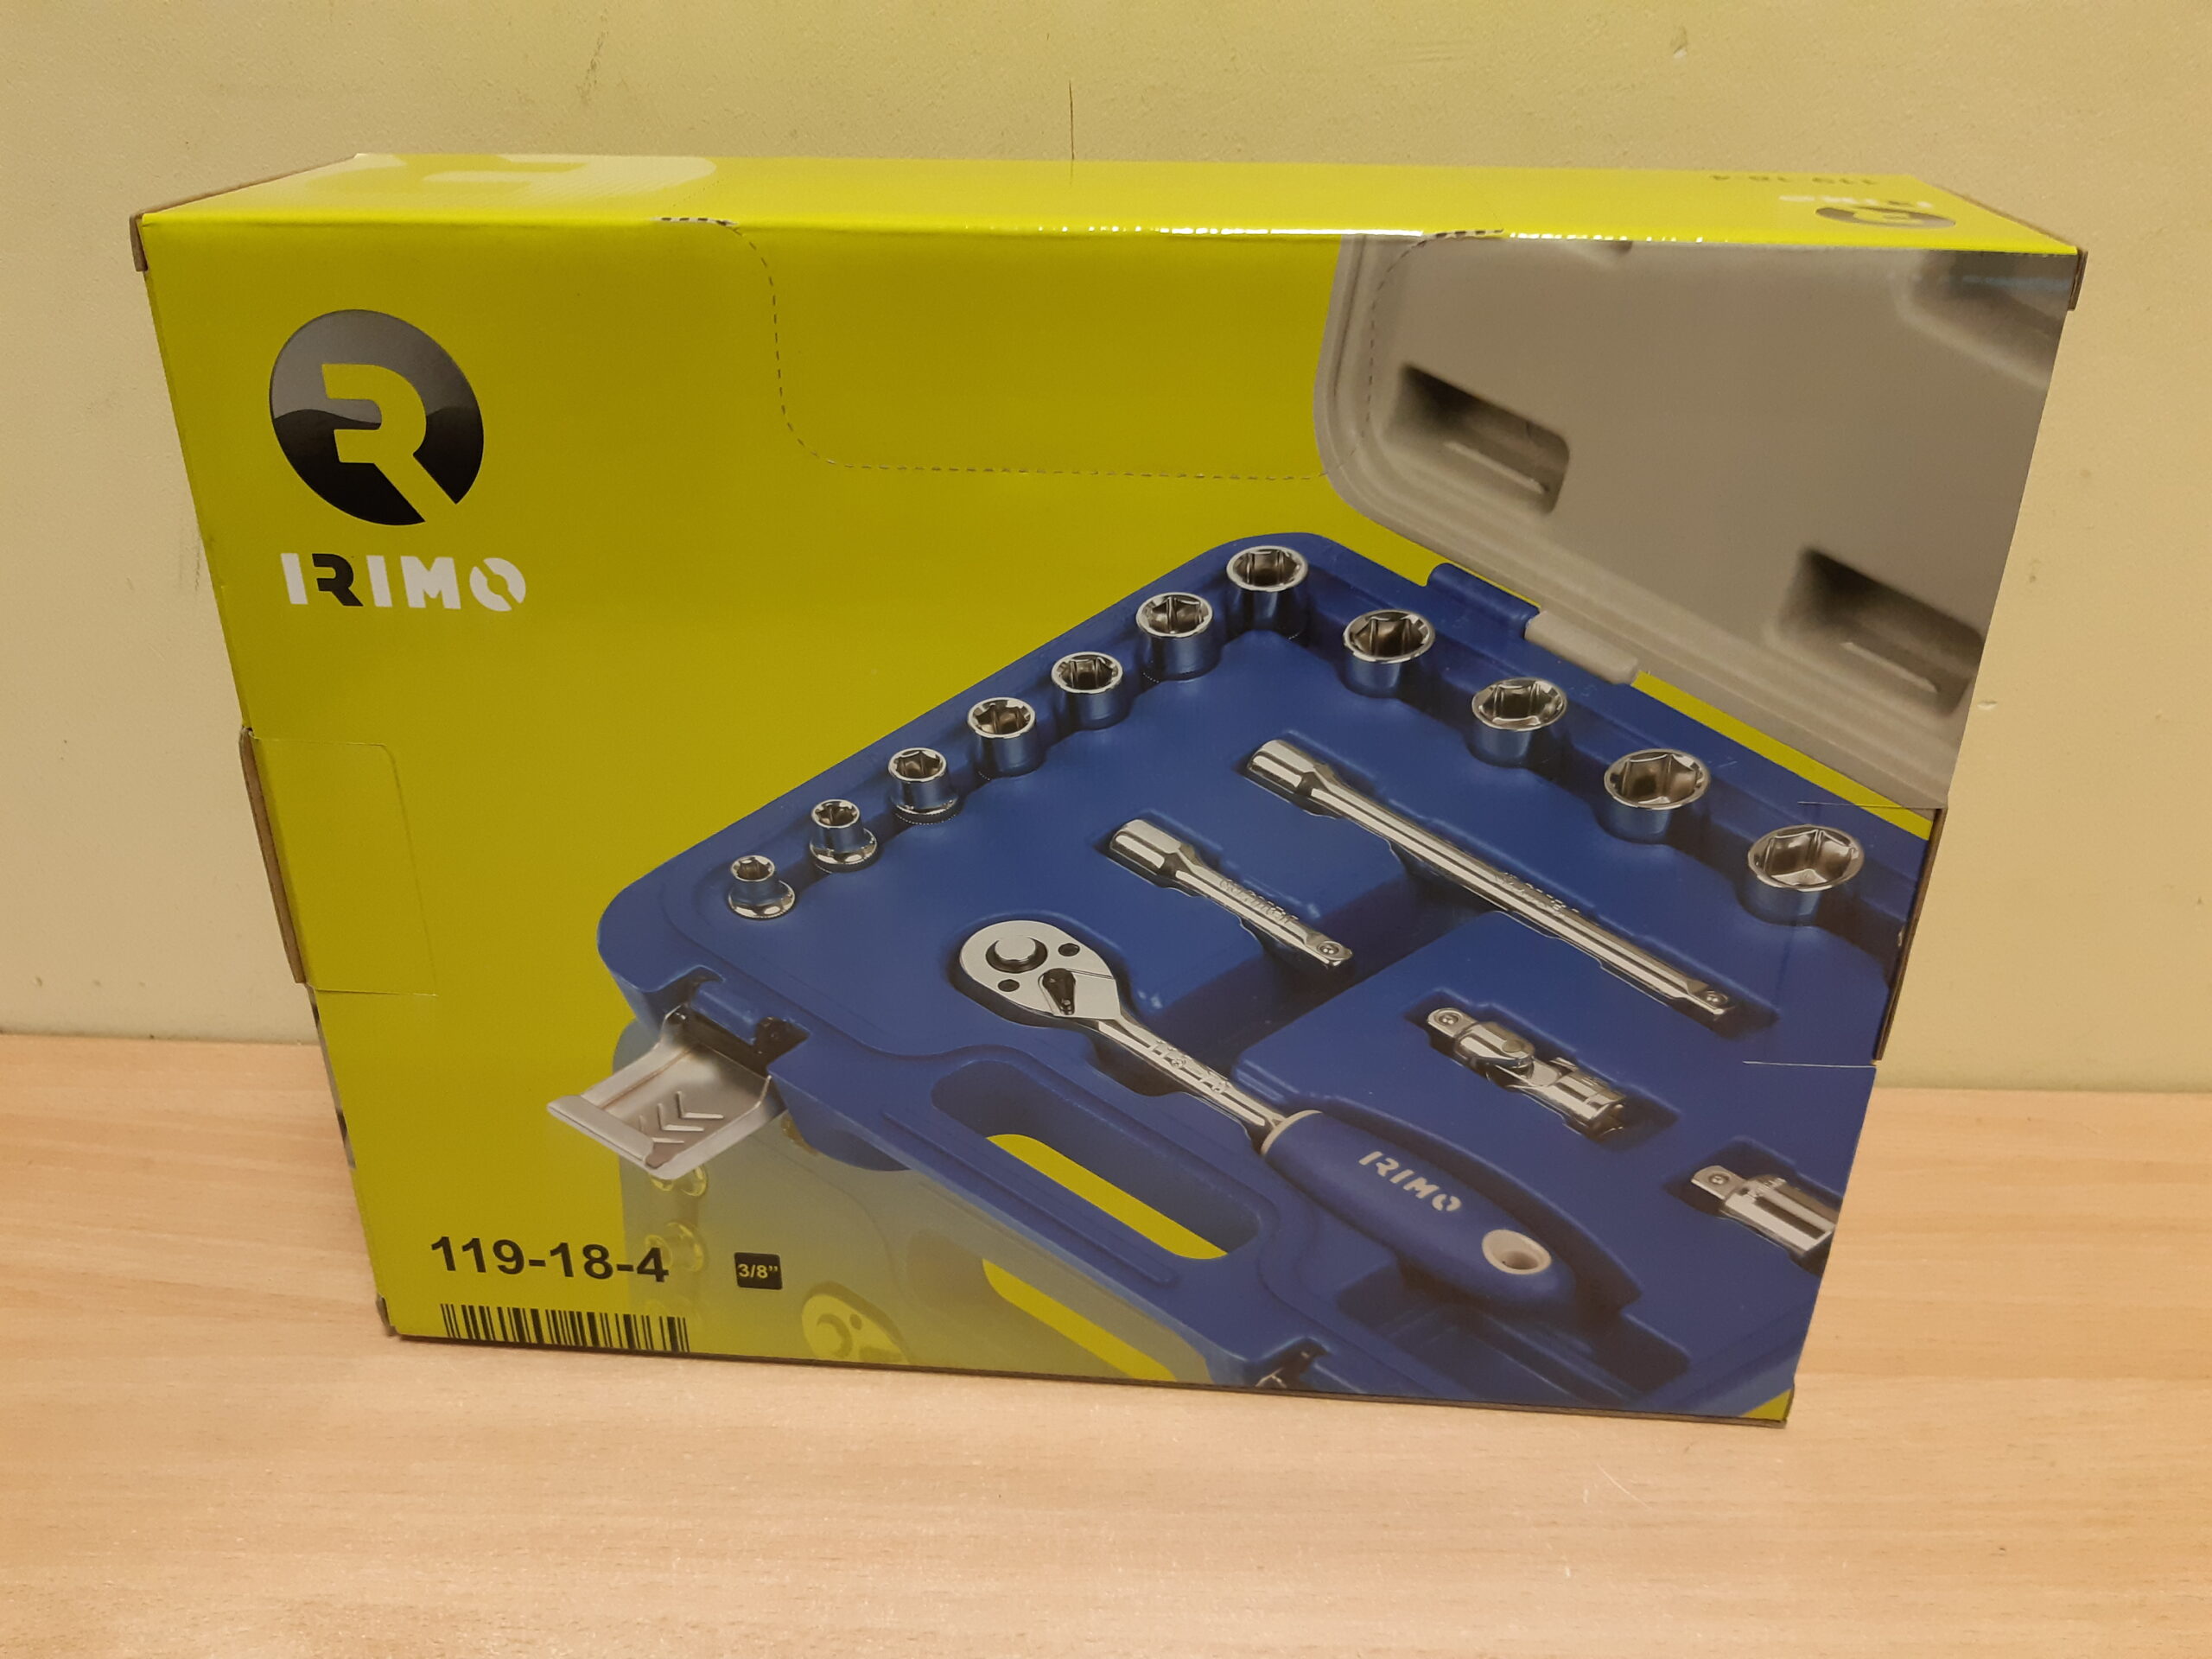 Tools24 - padrunvõtmete tööriistakomplekt IRIMO 119-18-4-5